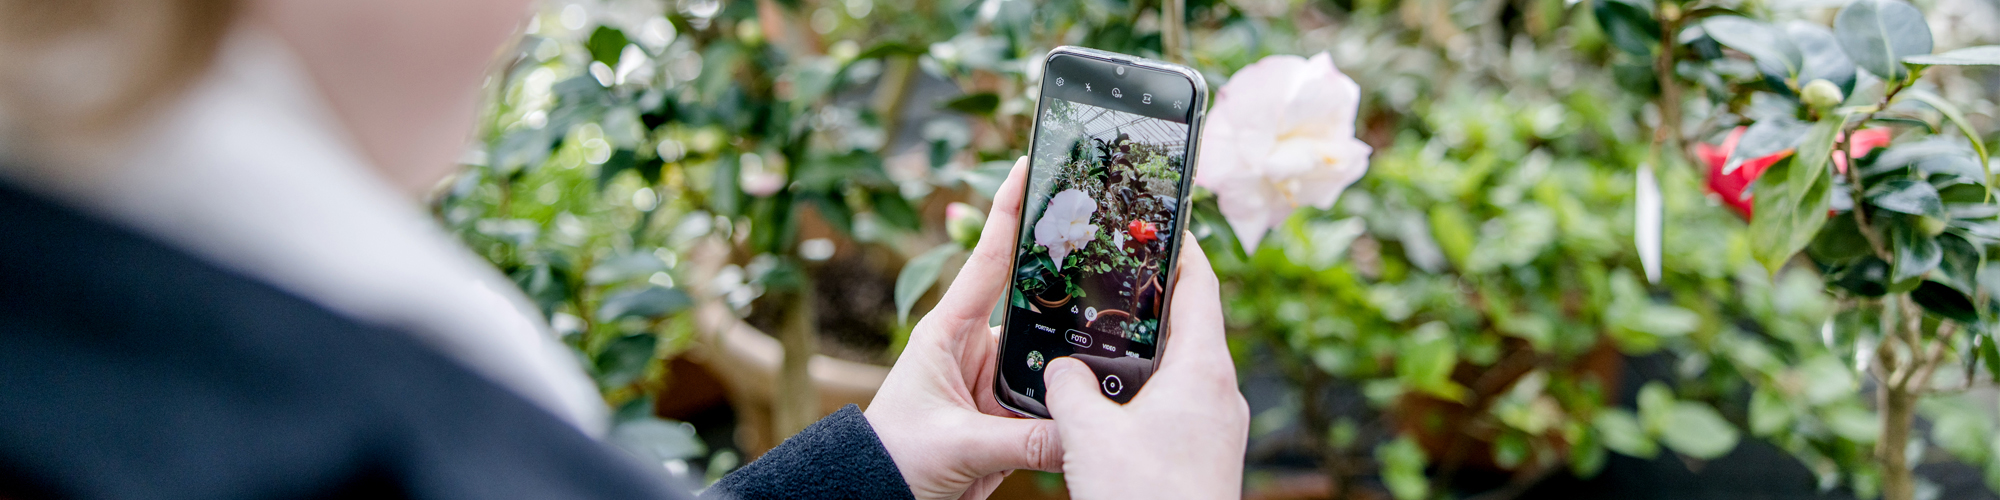 Frau bestimmte mit Handy-App eine Pflanze in einem Garten